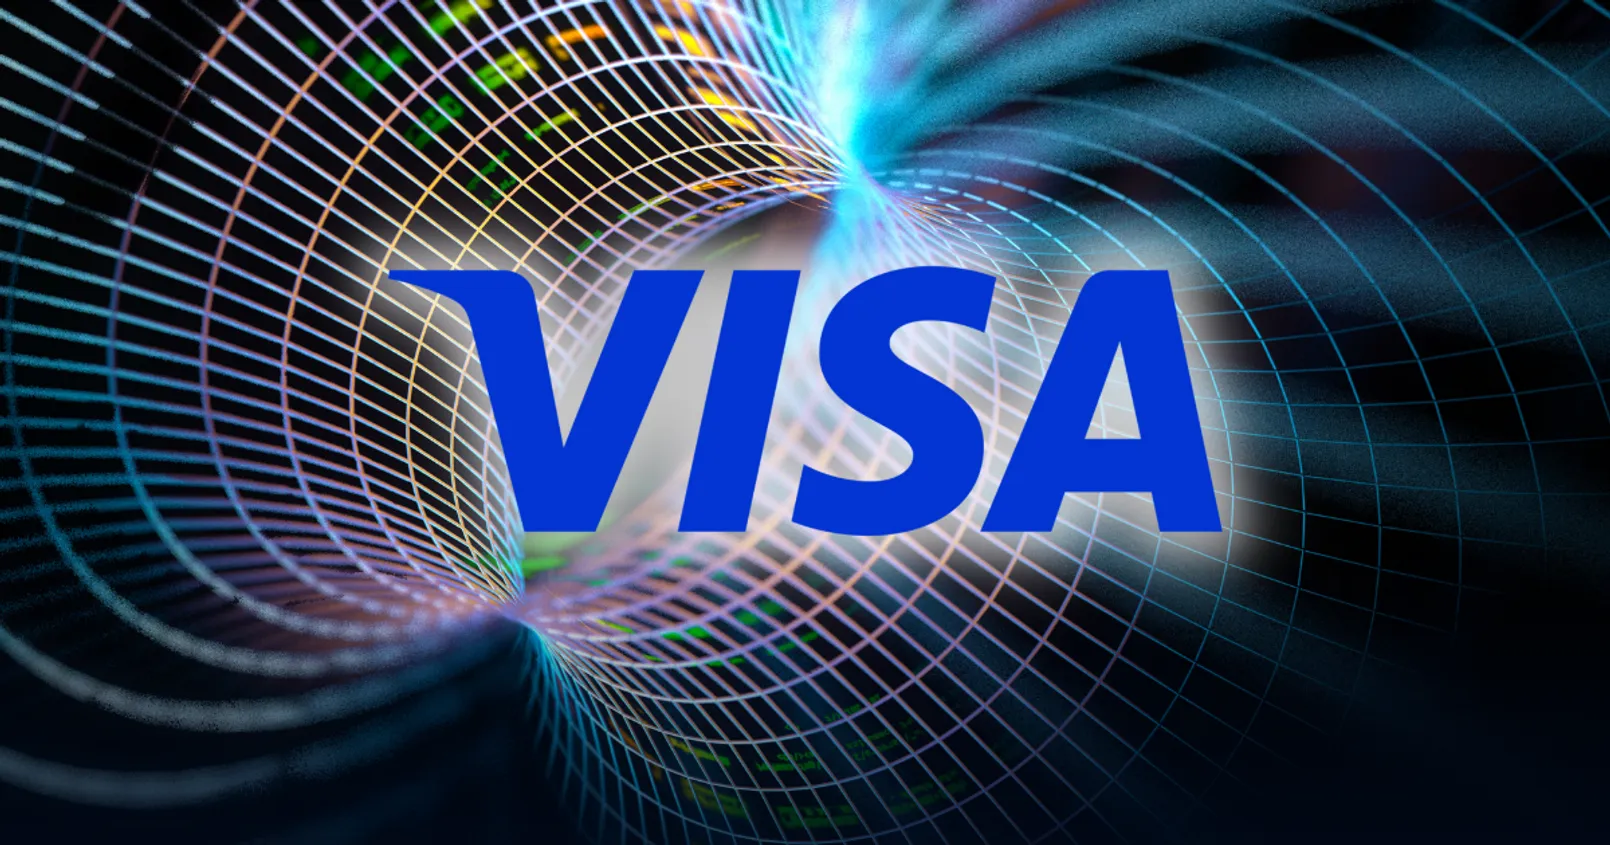 Visa รุกบล็อกเชนต่อเนื่อง! คาดเล็งหยิบ Ethereum - Polygon พัฒนาโปรดักส์ใหม่